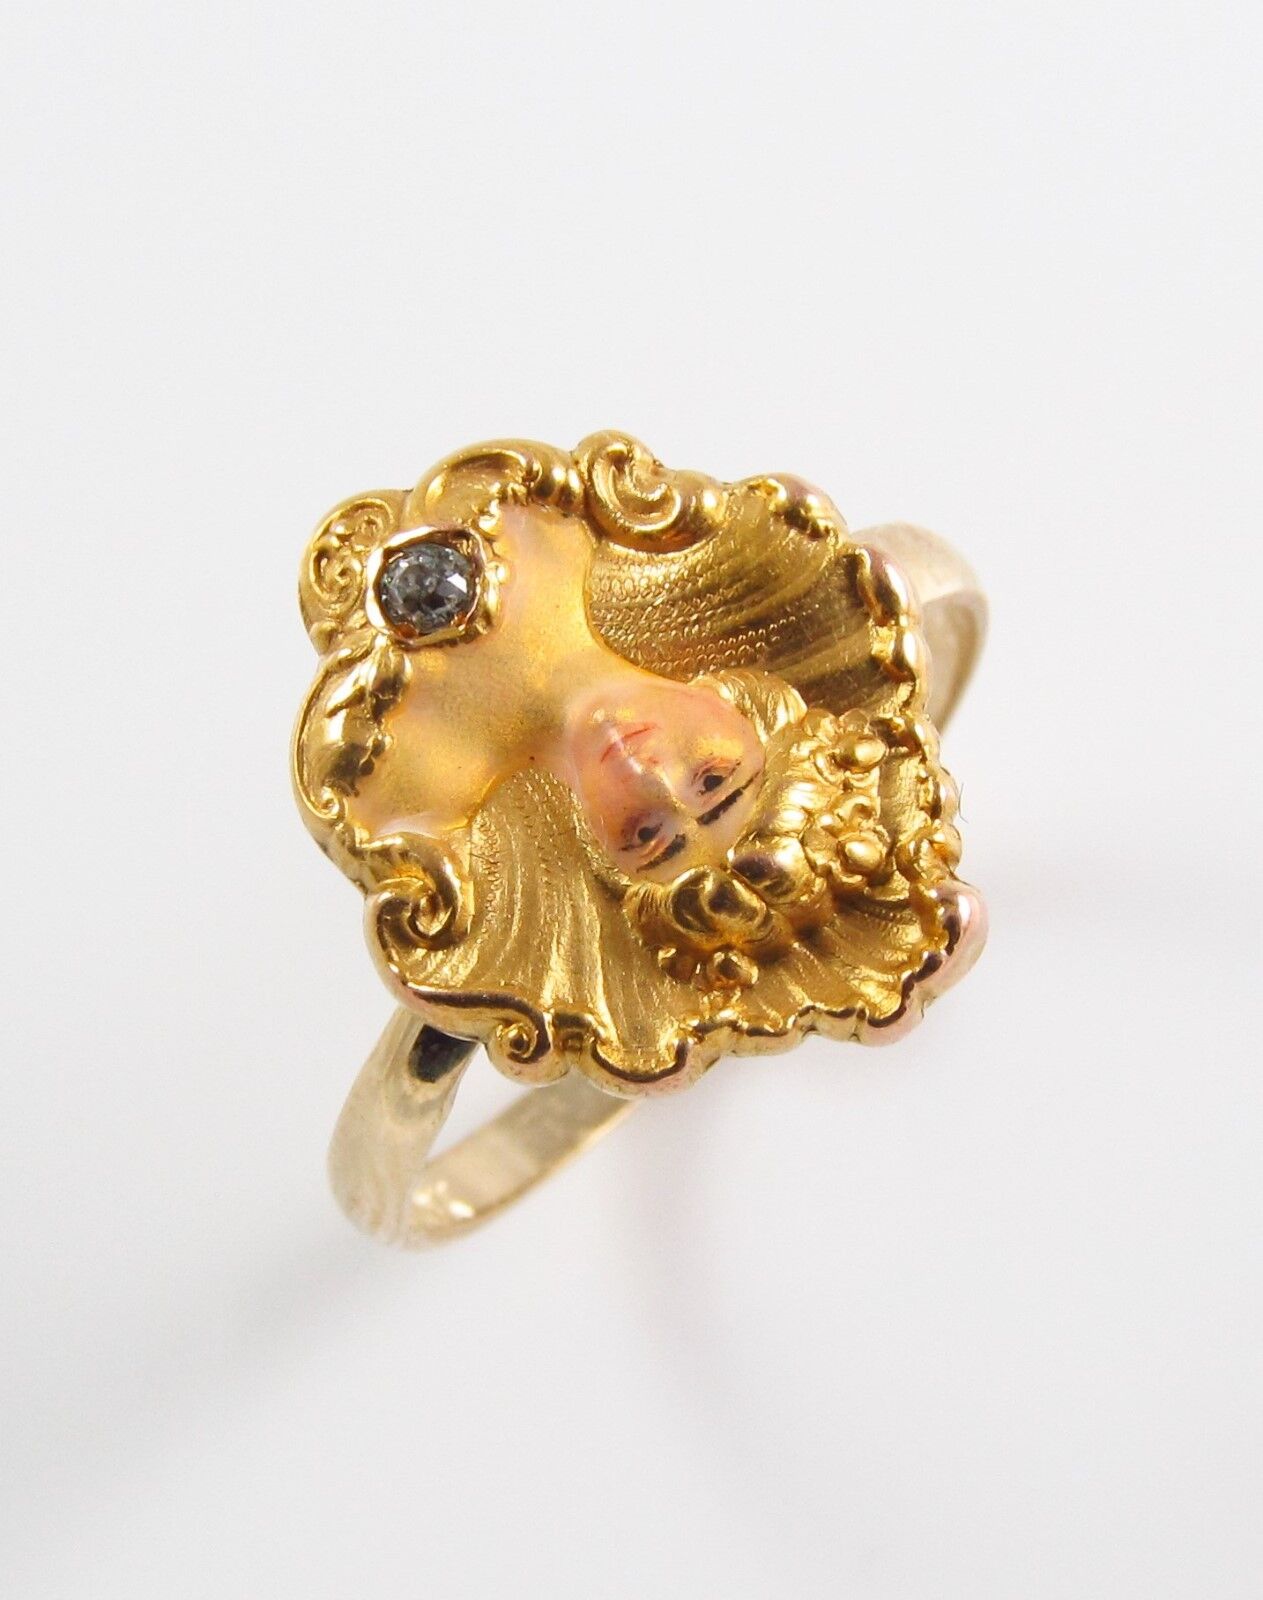 Antique 14k Gold Art Nouveau Enamel & Diamond Maiden Lady Ring Size 6.25